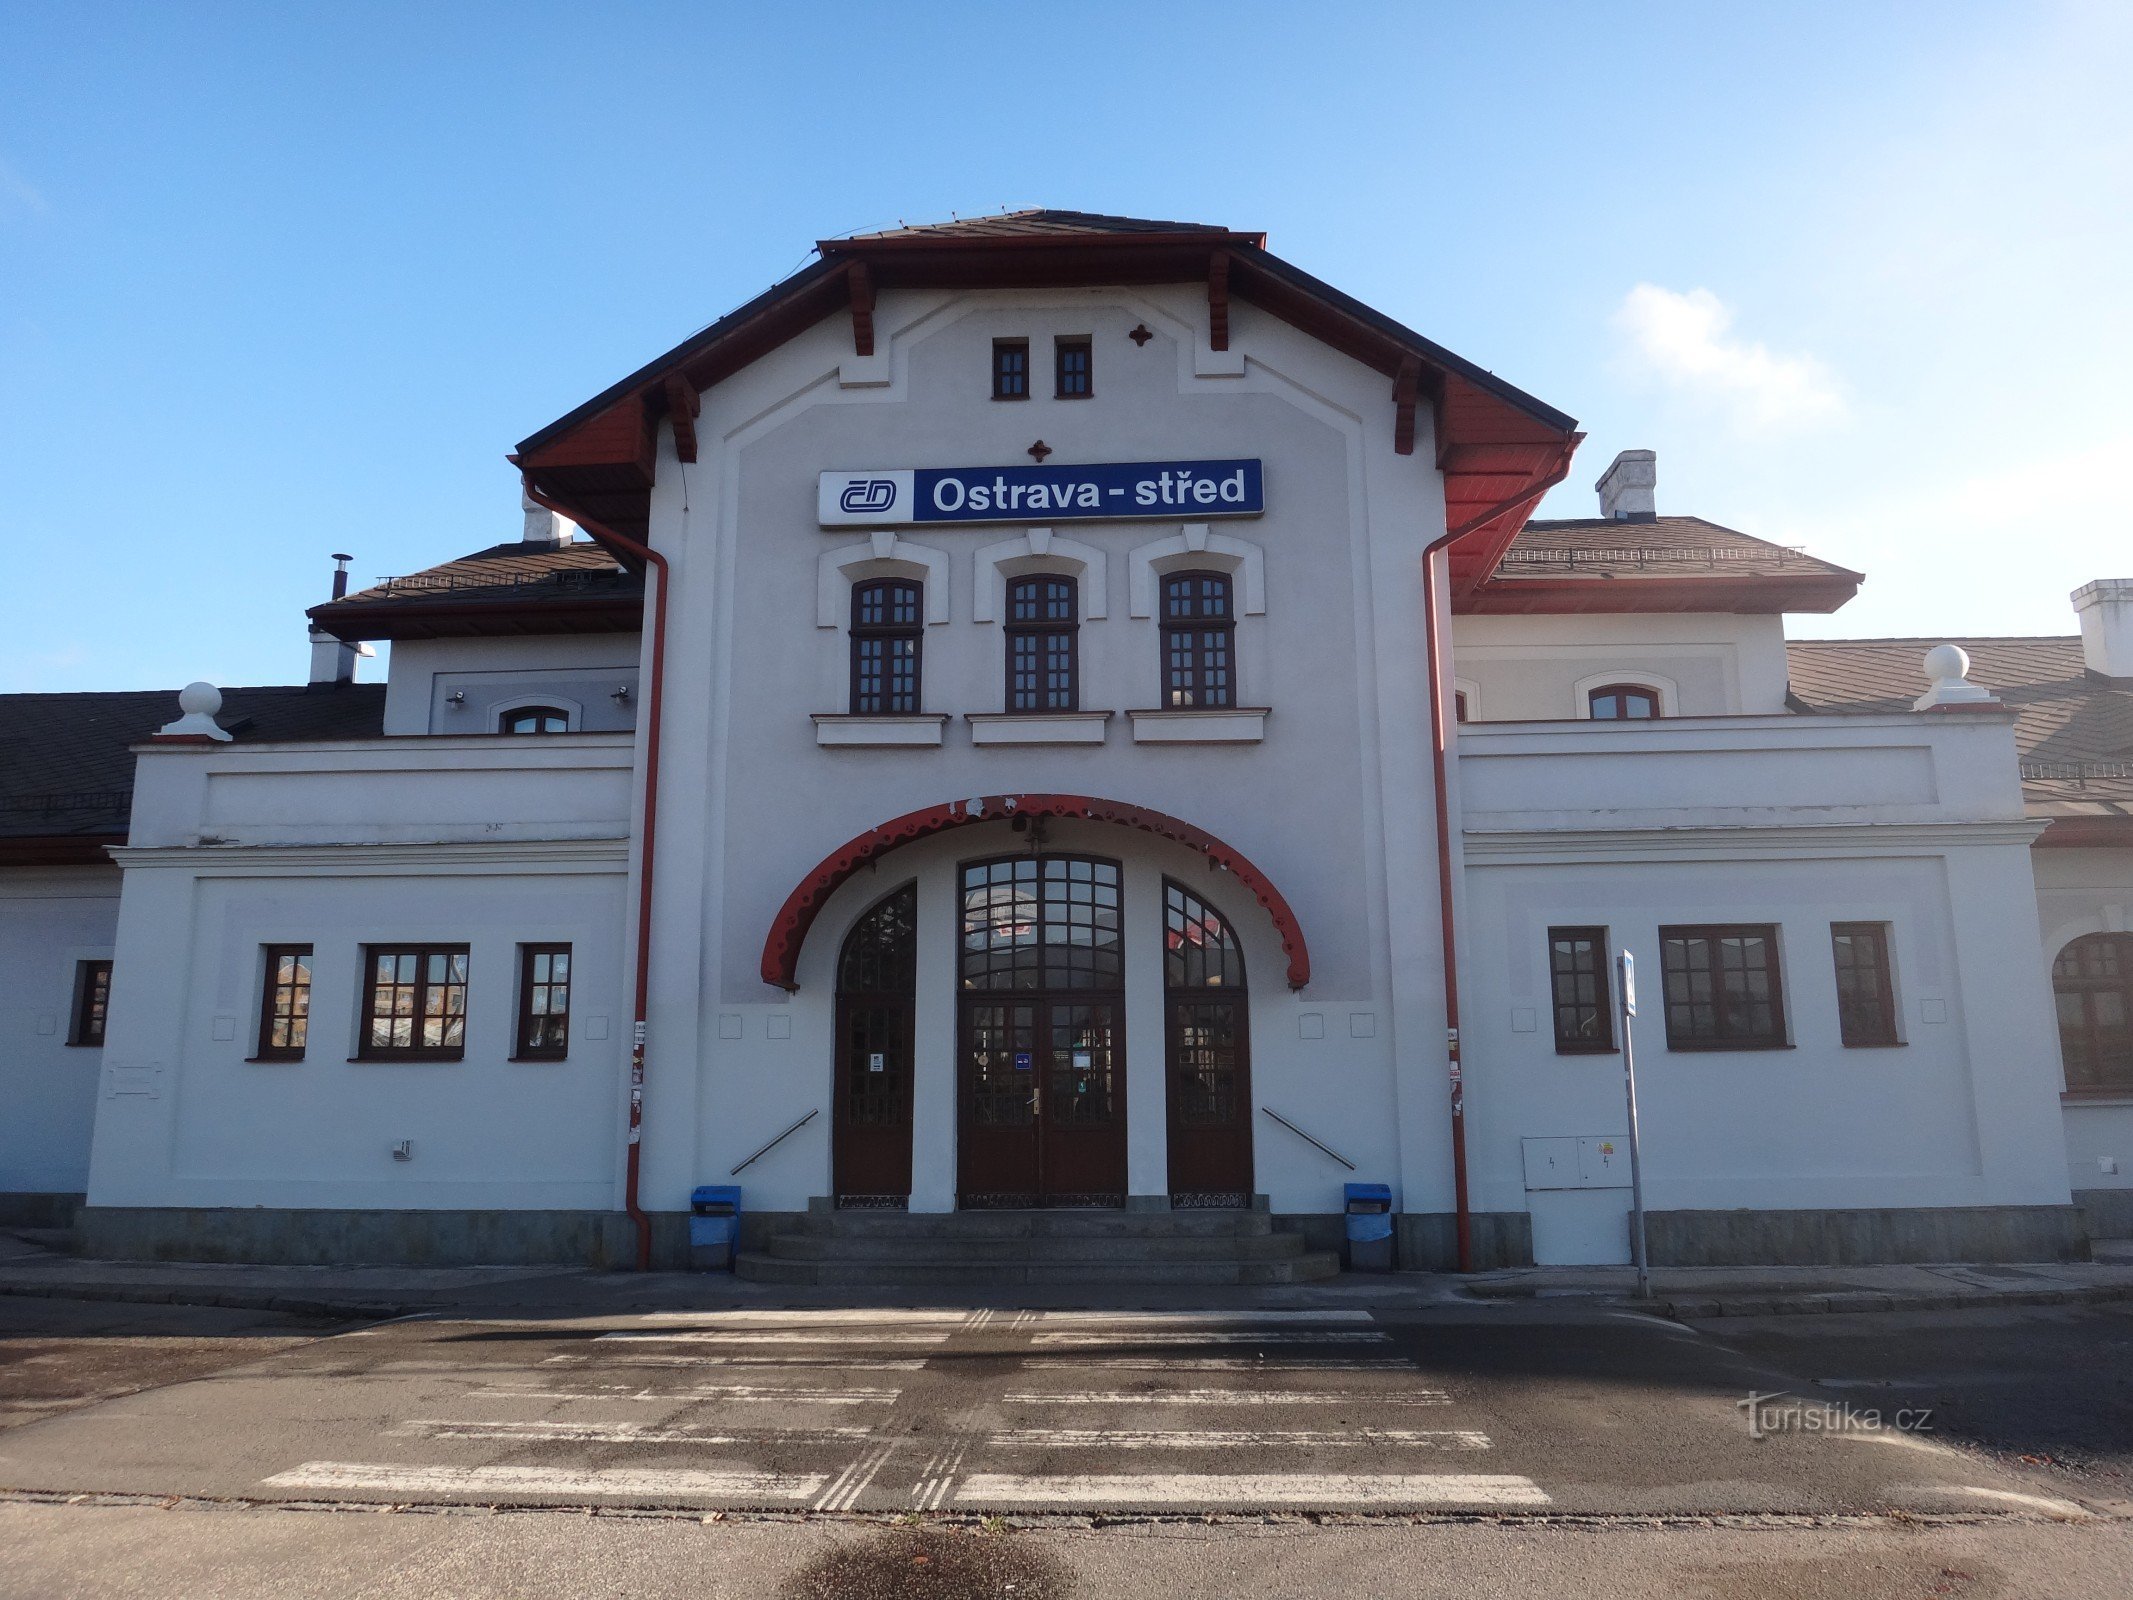 le bâtiment de la gare d'Ostrava-střed et du musée du chemin de fer